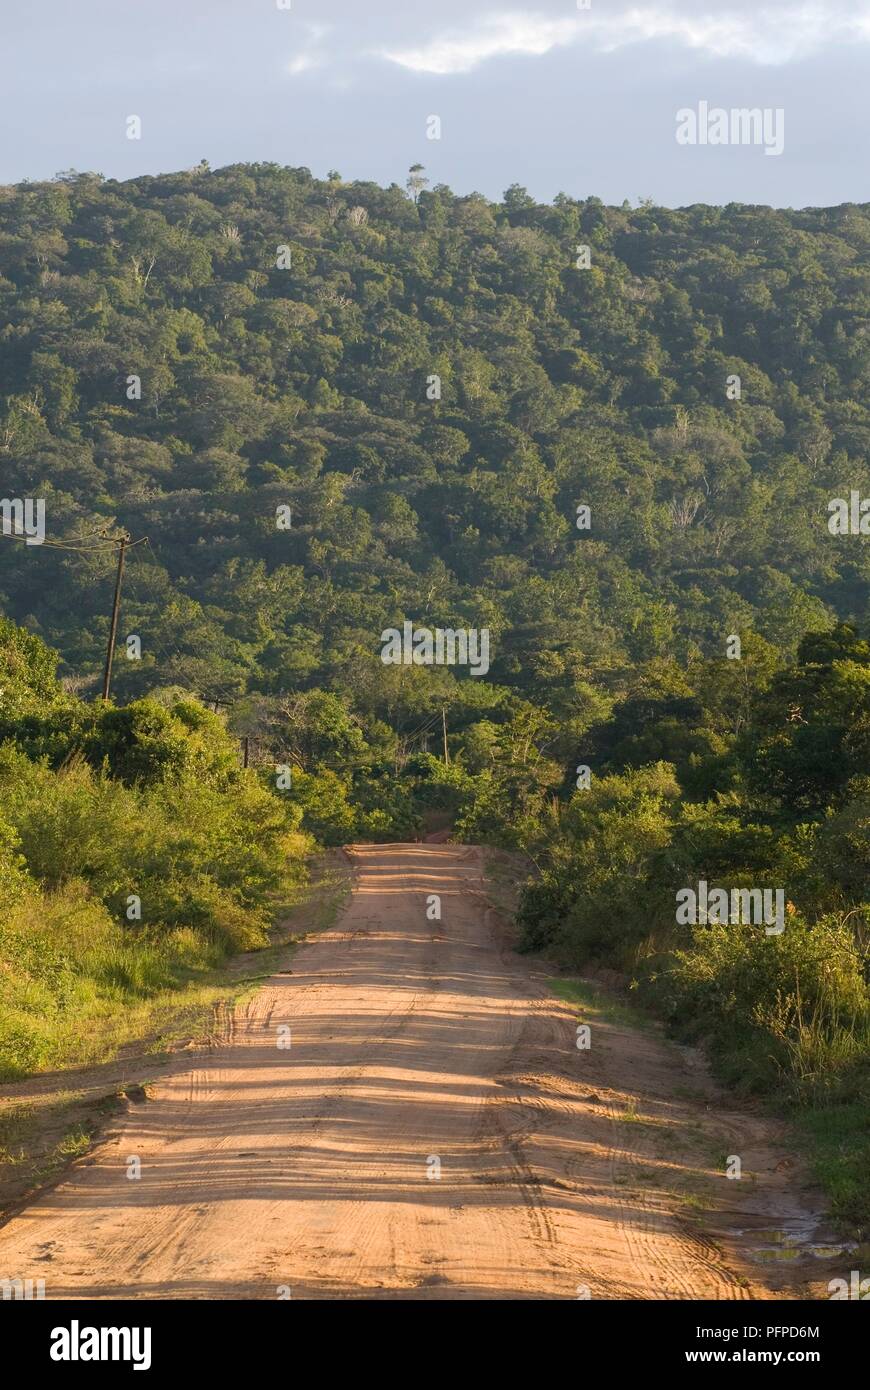 Au Kenya, le site Shimba Hills National Reserve, chemin de terre à travers la campagne verdoyante et vallonnée Banque D'Images